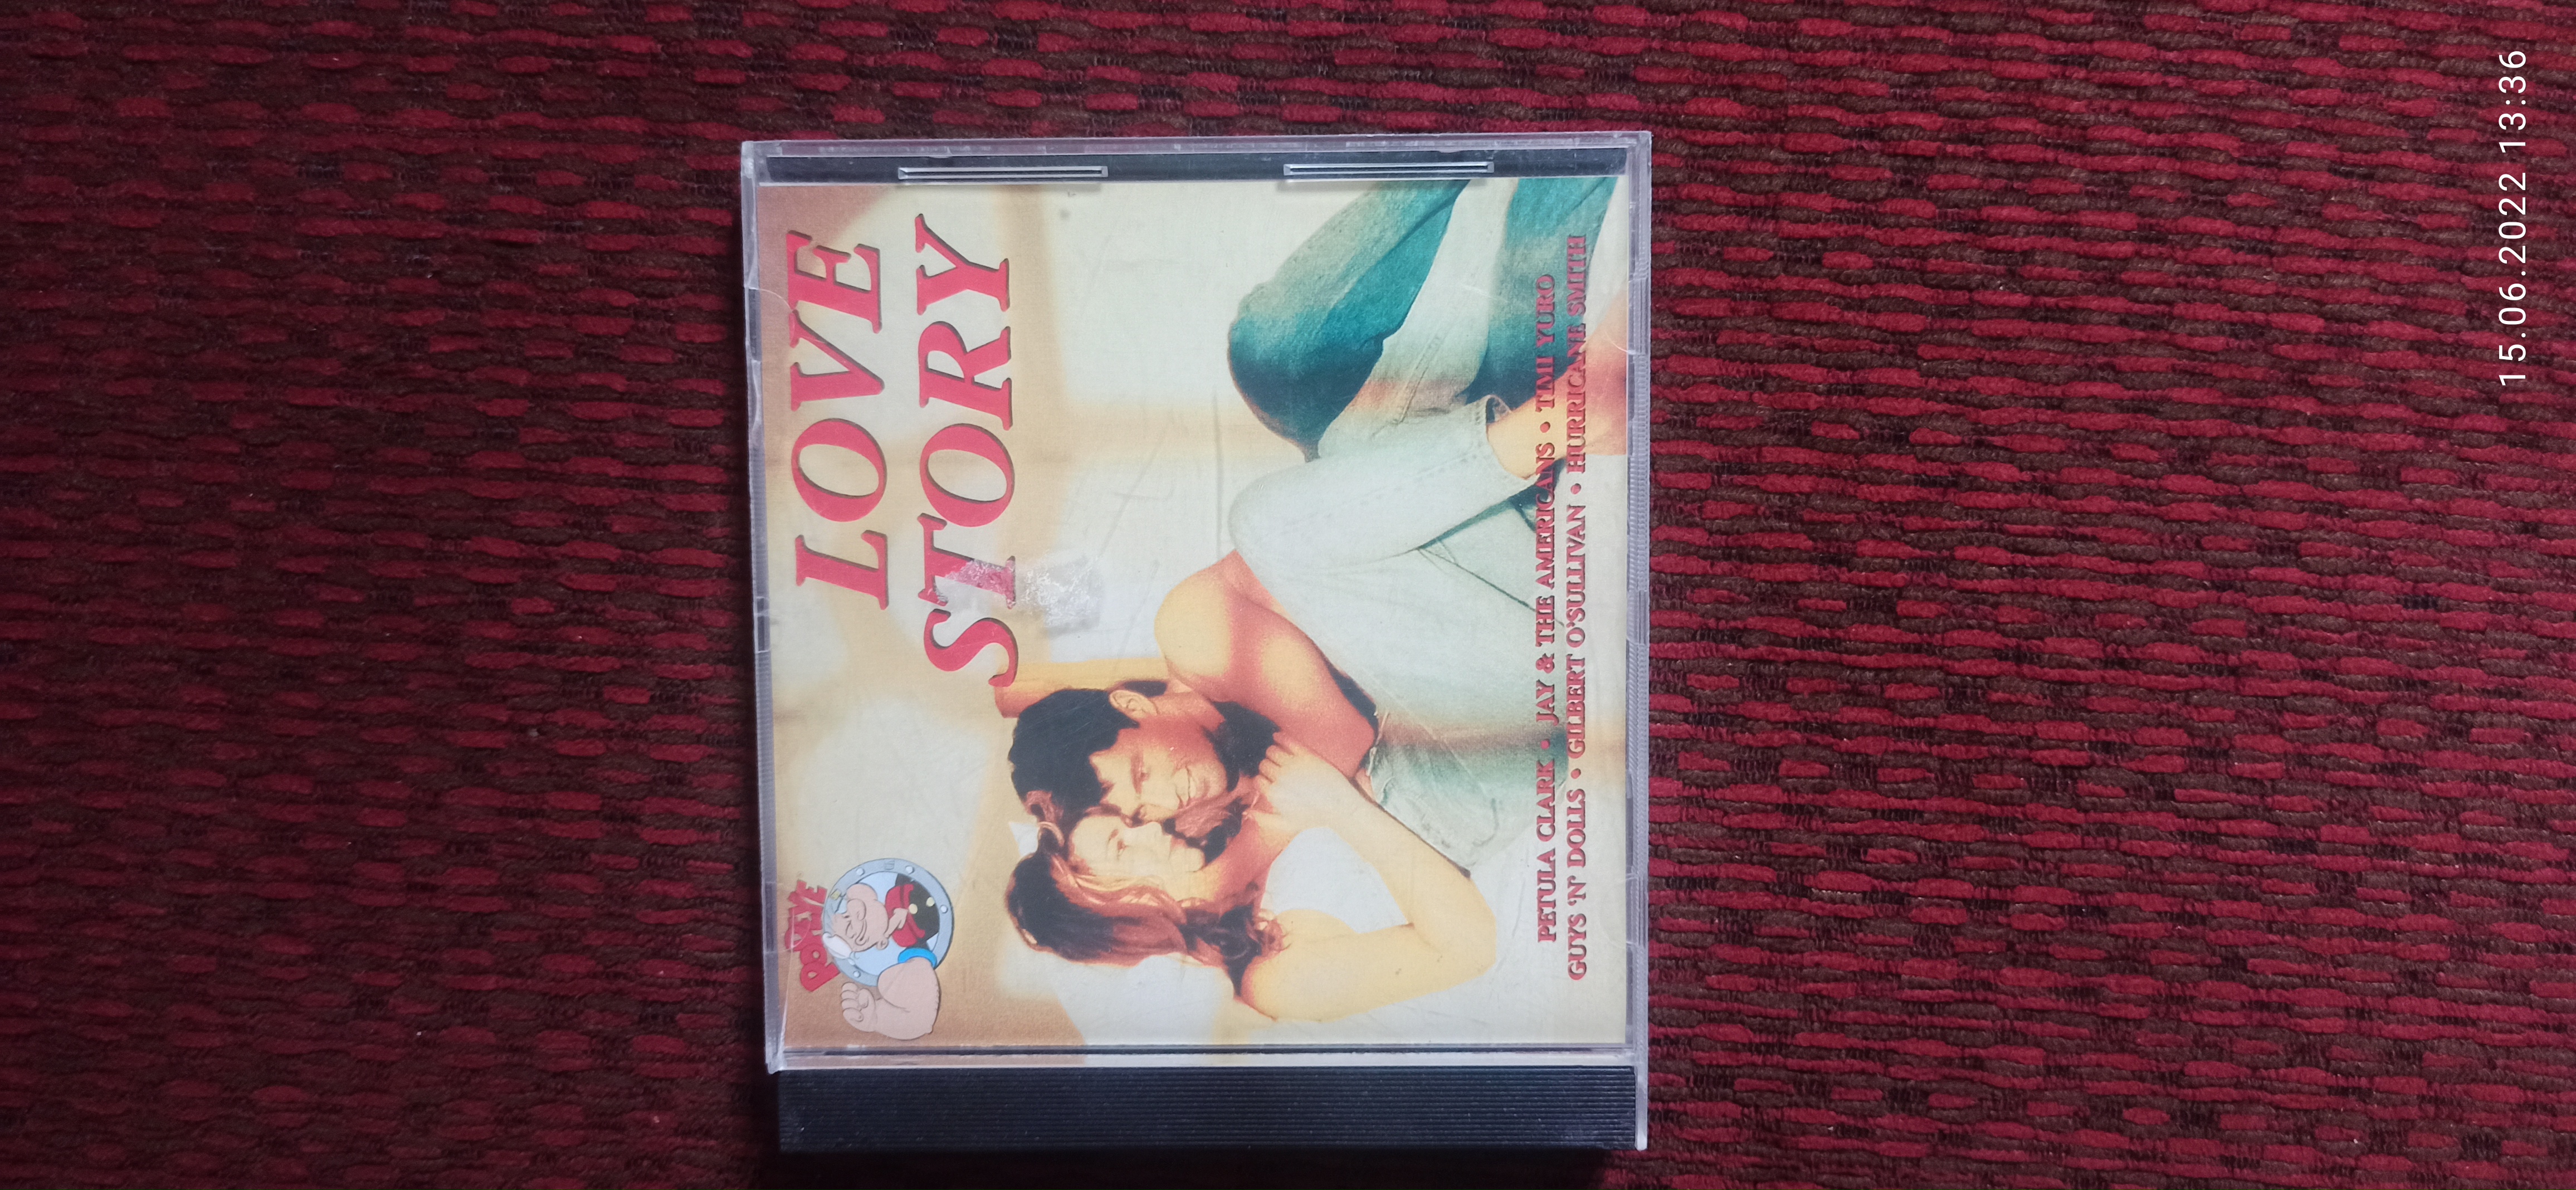 תמונה 1 ,דיסק love story למכירה ביבנה מוסיקה וסרטים  cd